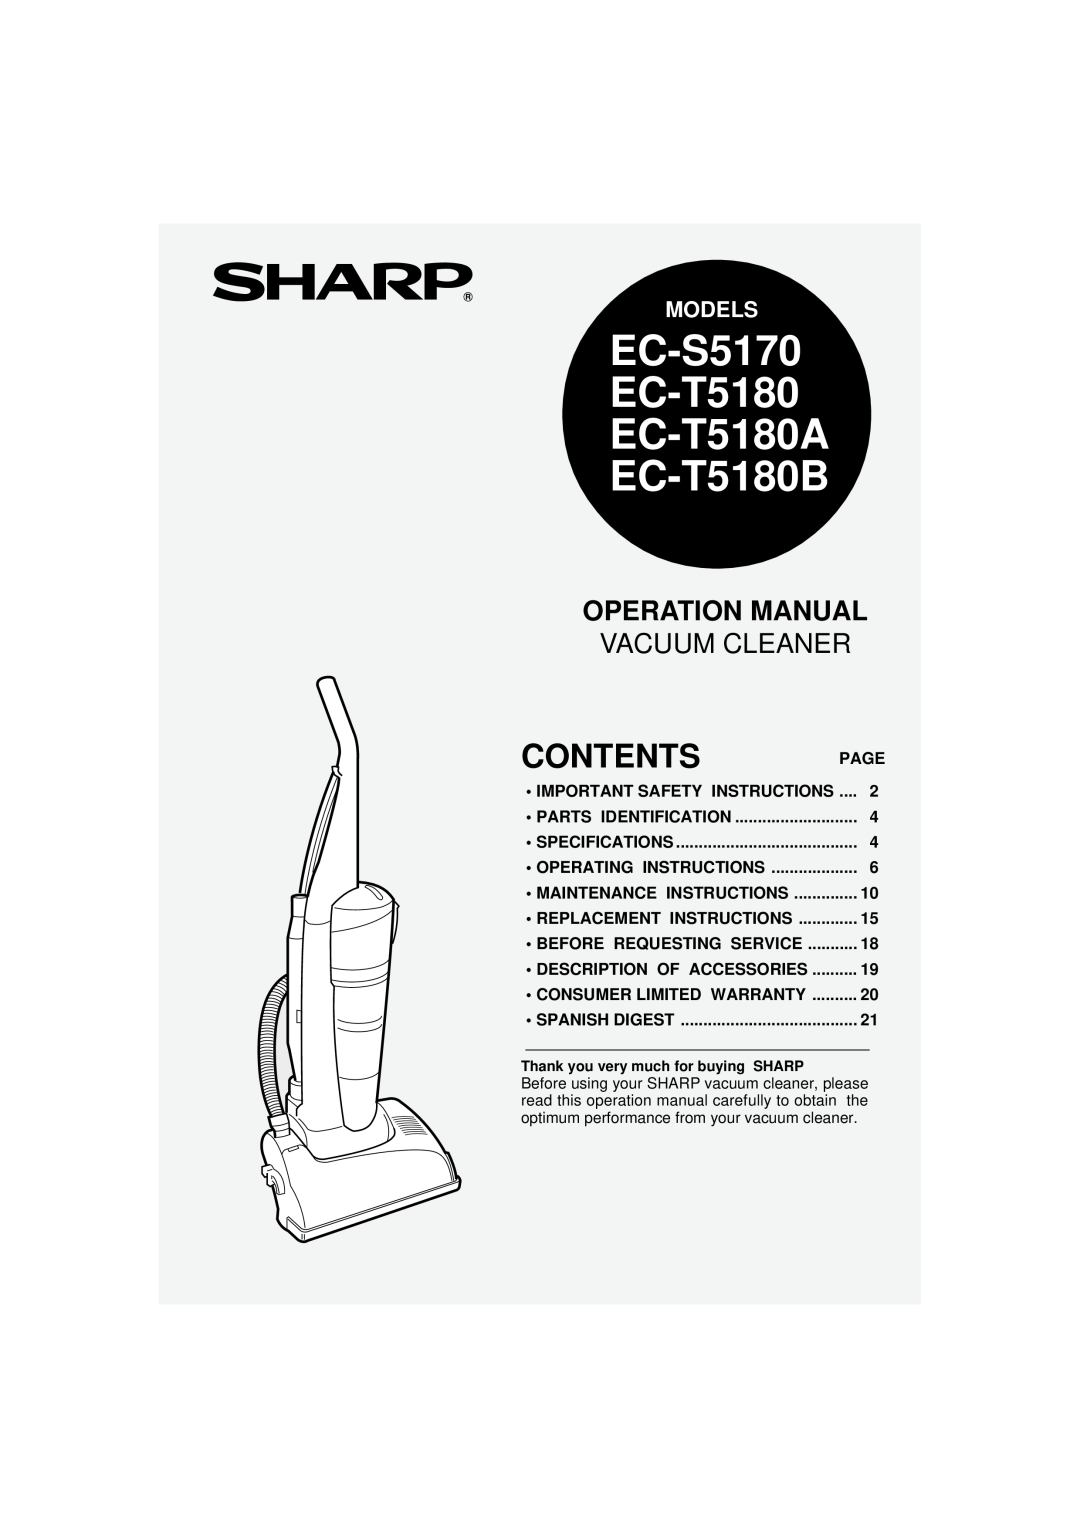 Sharp operation manual Contents, EC-S5170 EC-T5180 EC-T5180A EC-T5180B, Vacuum Cleaner, Models 